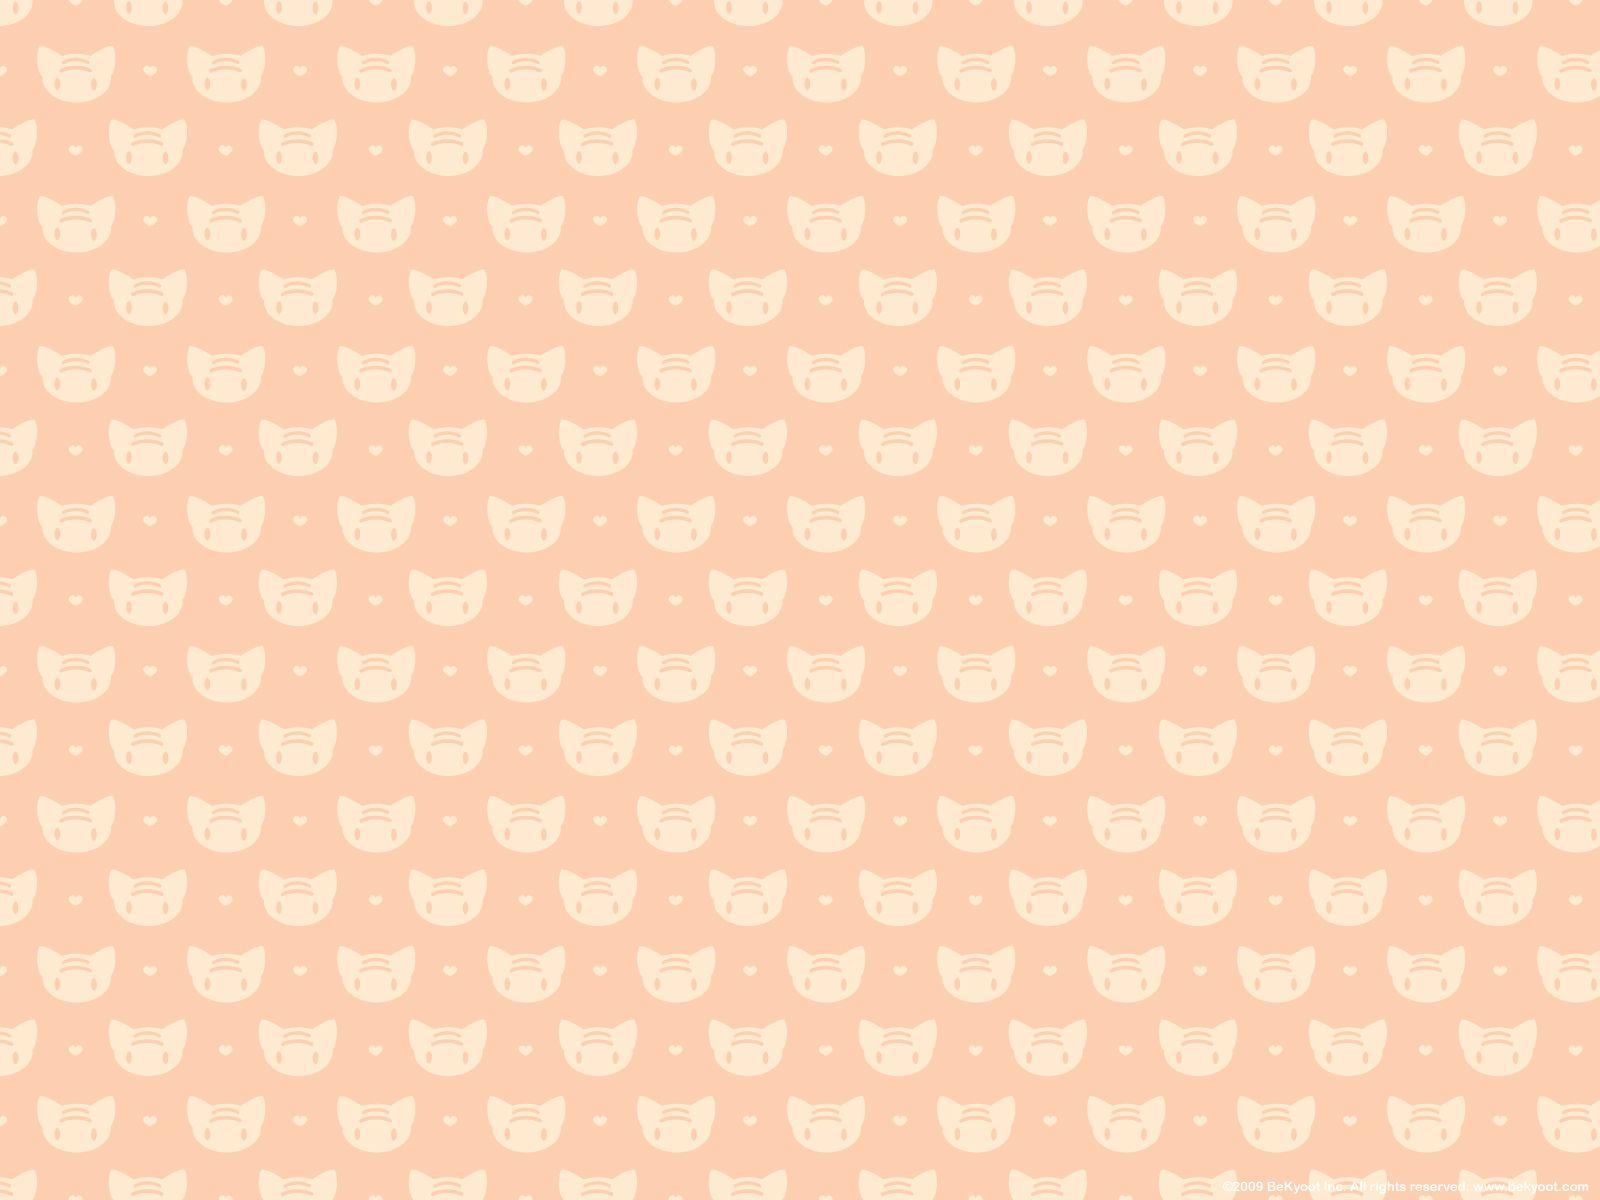 Bạn yêu thích những động vật nhỏ xinh? Hãy xem bộ ảnh Kawaii Peach Wallpapers này với nhiều hình ảnh peach cực kawaii chắc chắn sẽ làm bạn hài lòng. Đó là những hình ảnh ngọt ngào và đáng yêu, bạn sẽ không muốn bỏ lỡ.